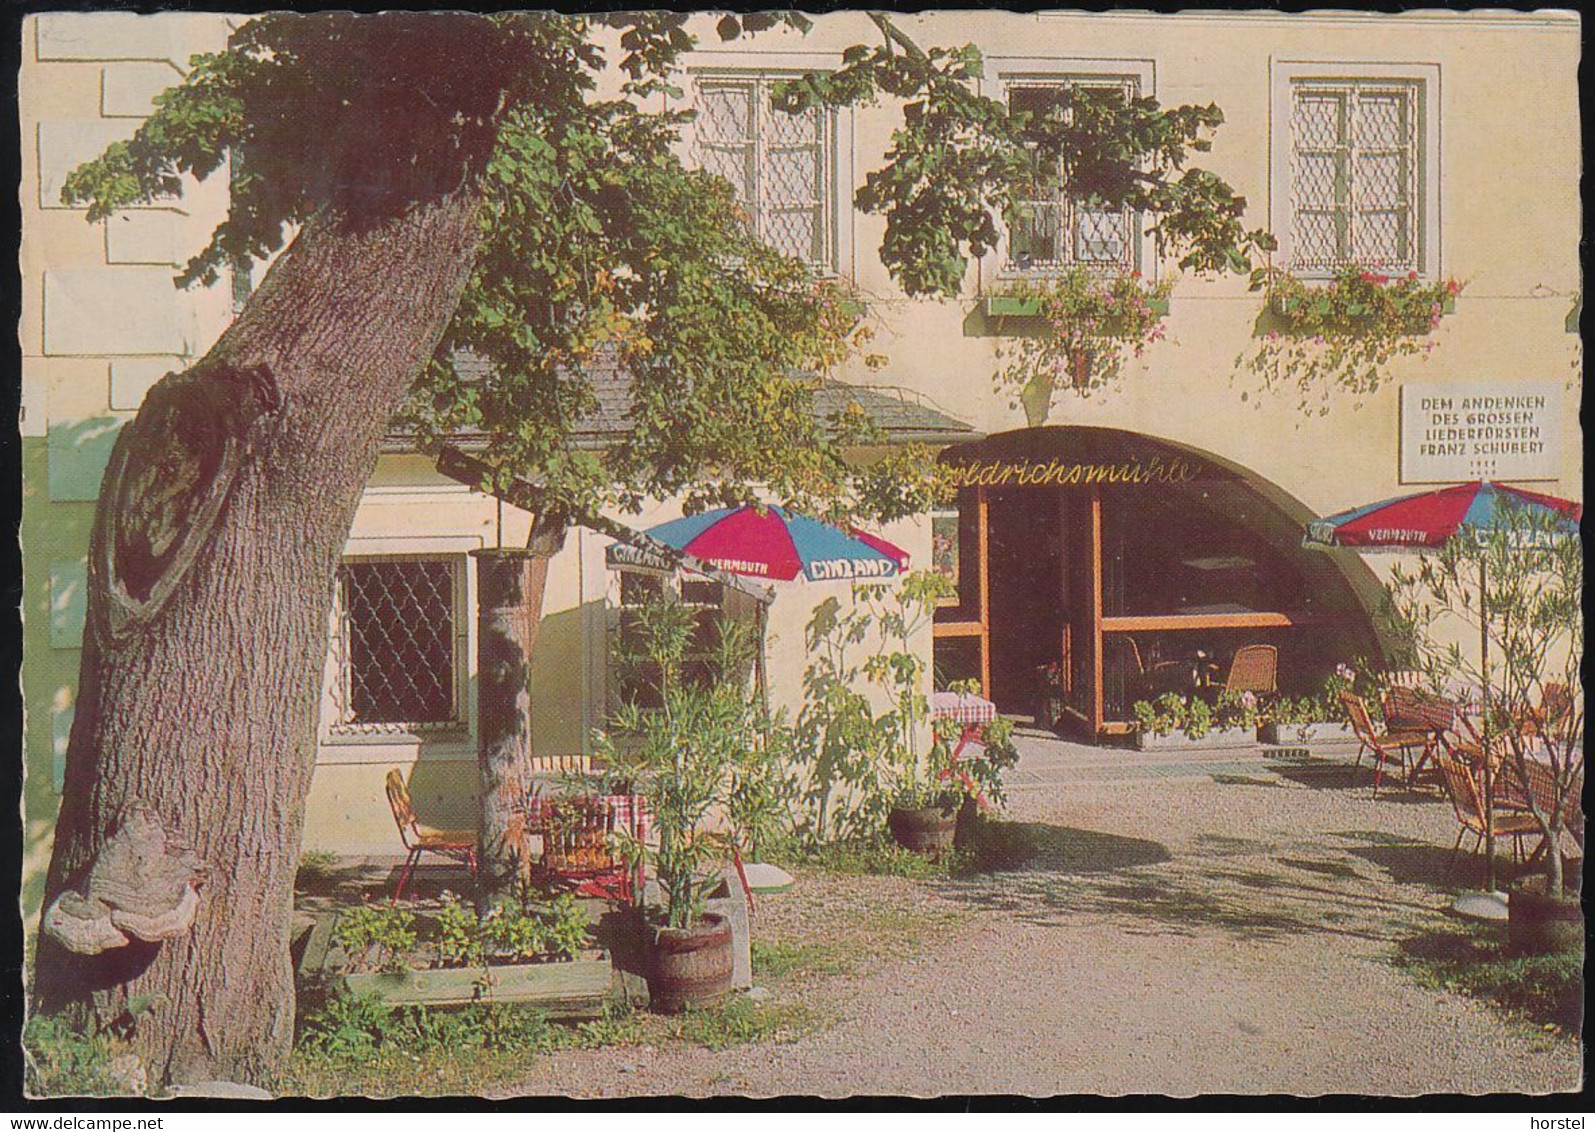 Austria - 2371 Hinterbrühl - Höldrichsmühle - Cafe - Restaurant - Nice Stamp 1969 - Mödling